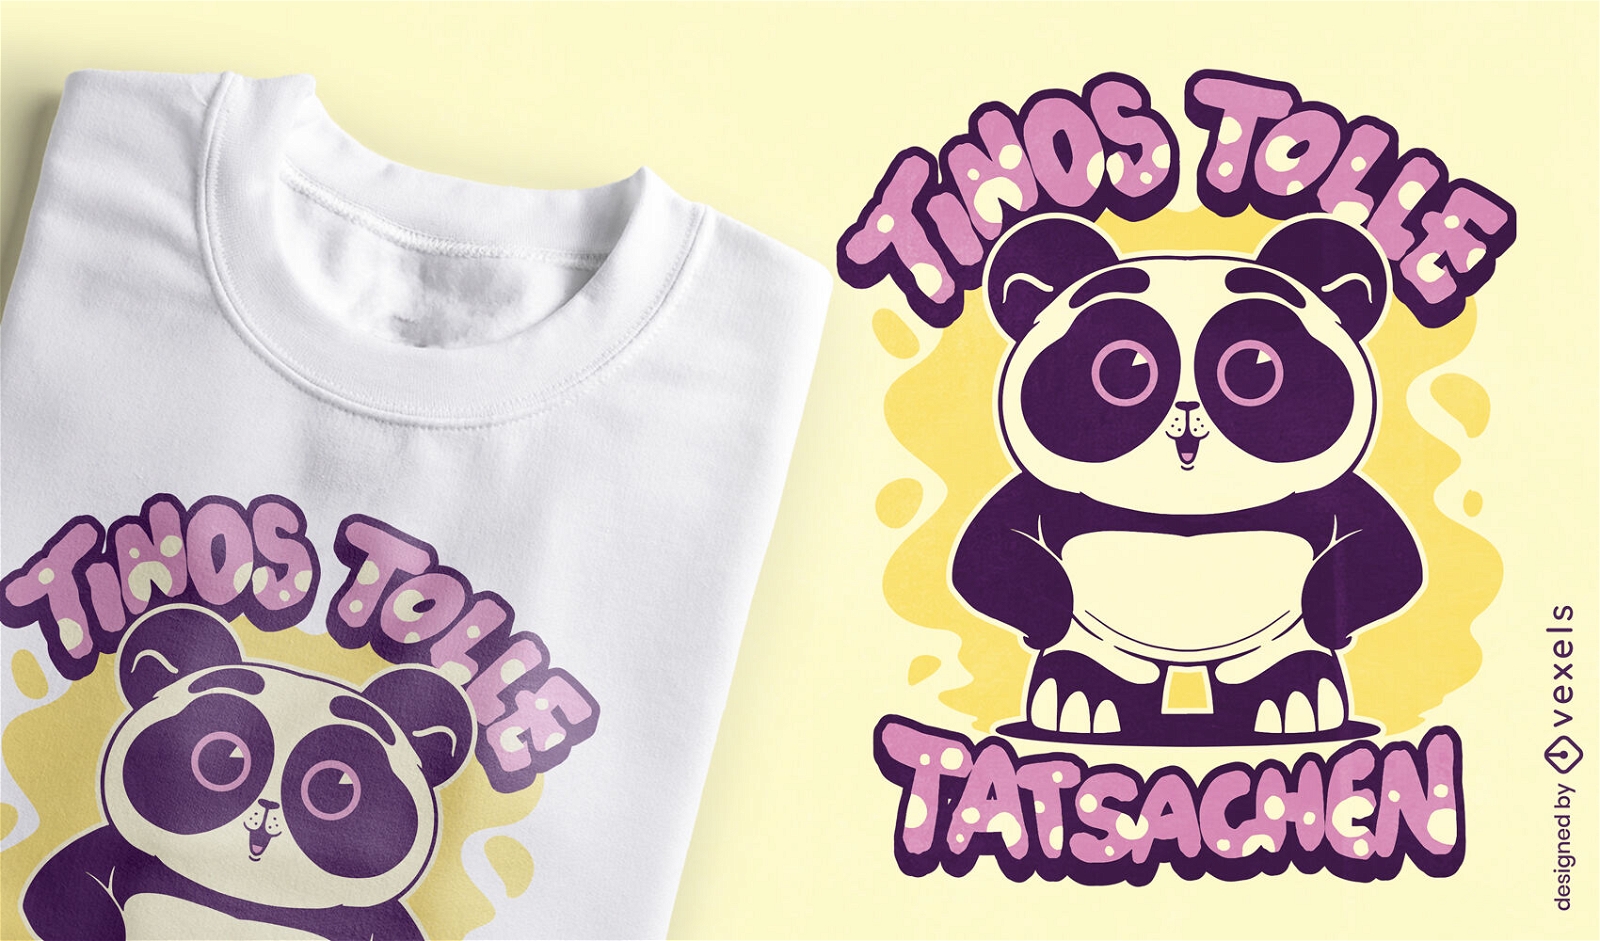 Panda bear adorable animal t-shirt design